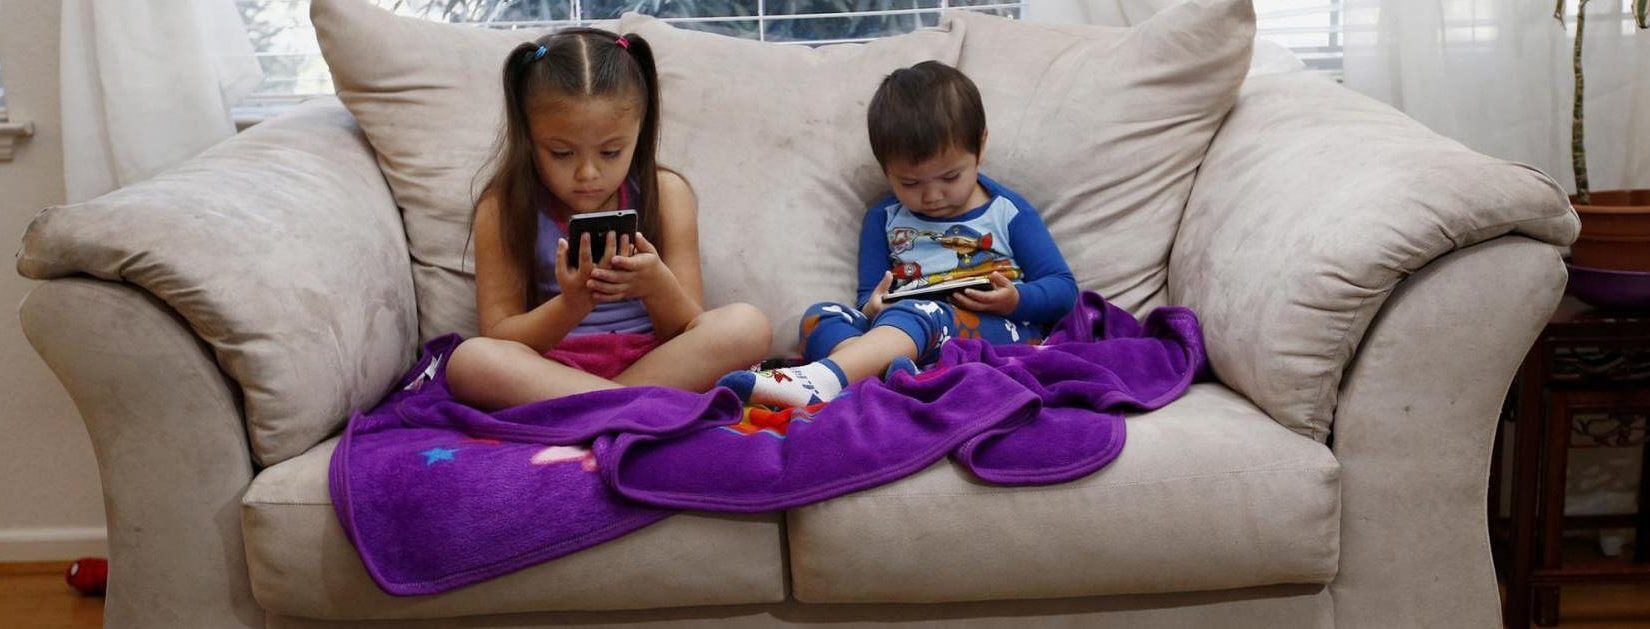 Η τεχνολογία ευθύνεται για την παιδική αϋπνία